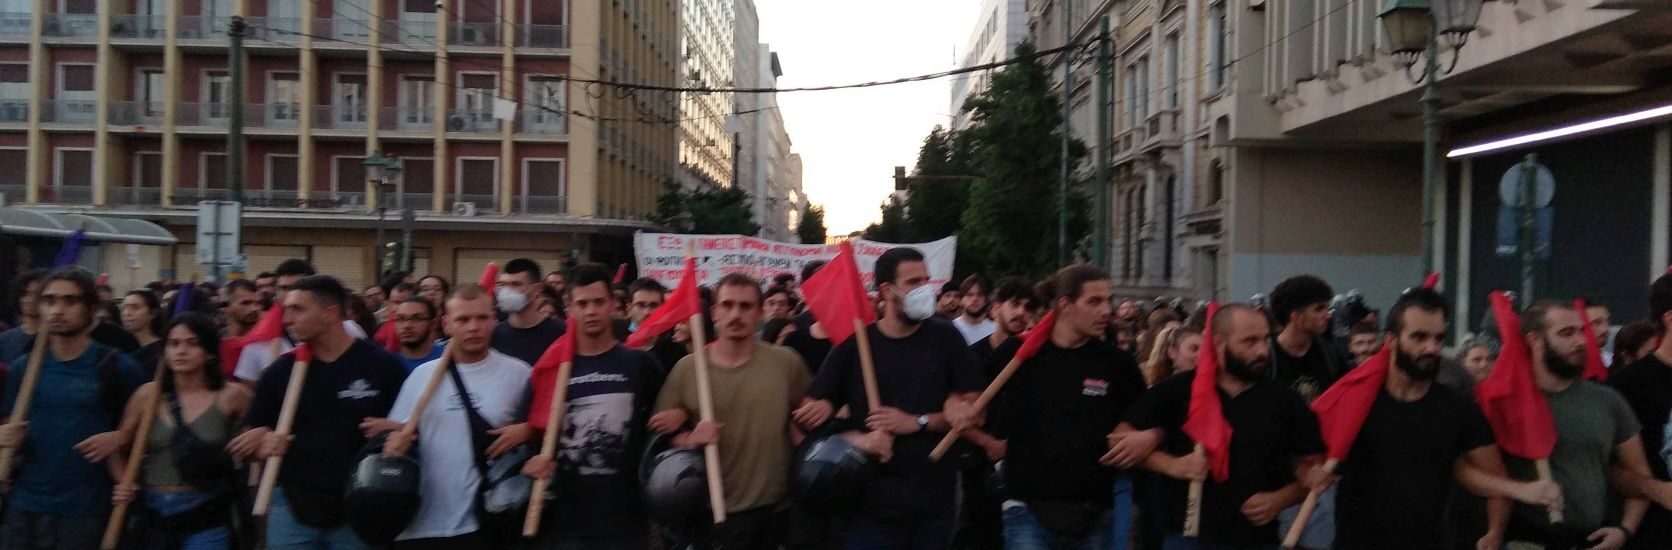 Μεγάλη φοιτητική διαδήλωση στο κέντρο της Αθήνας